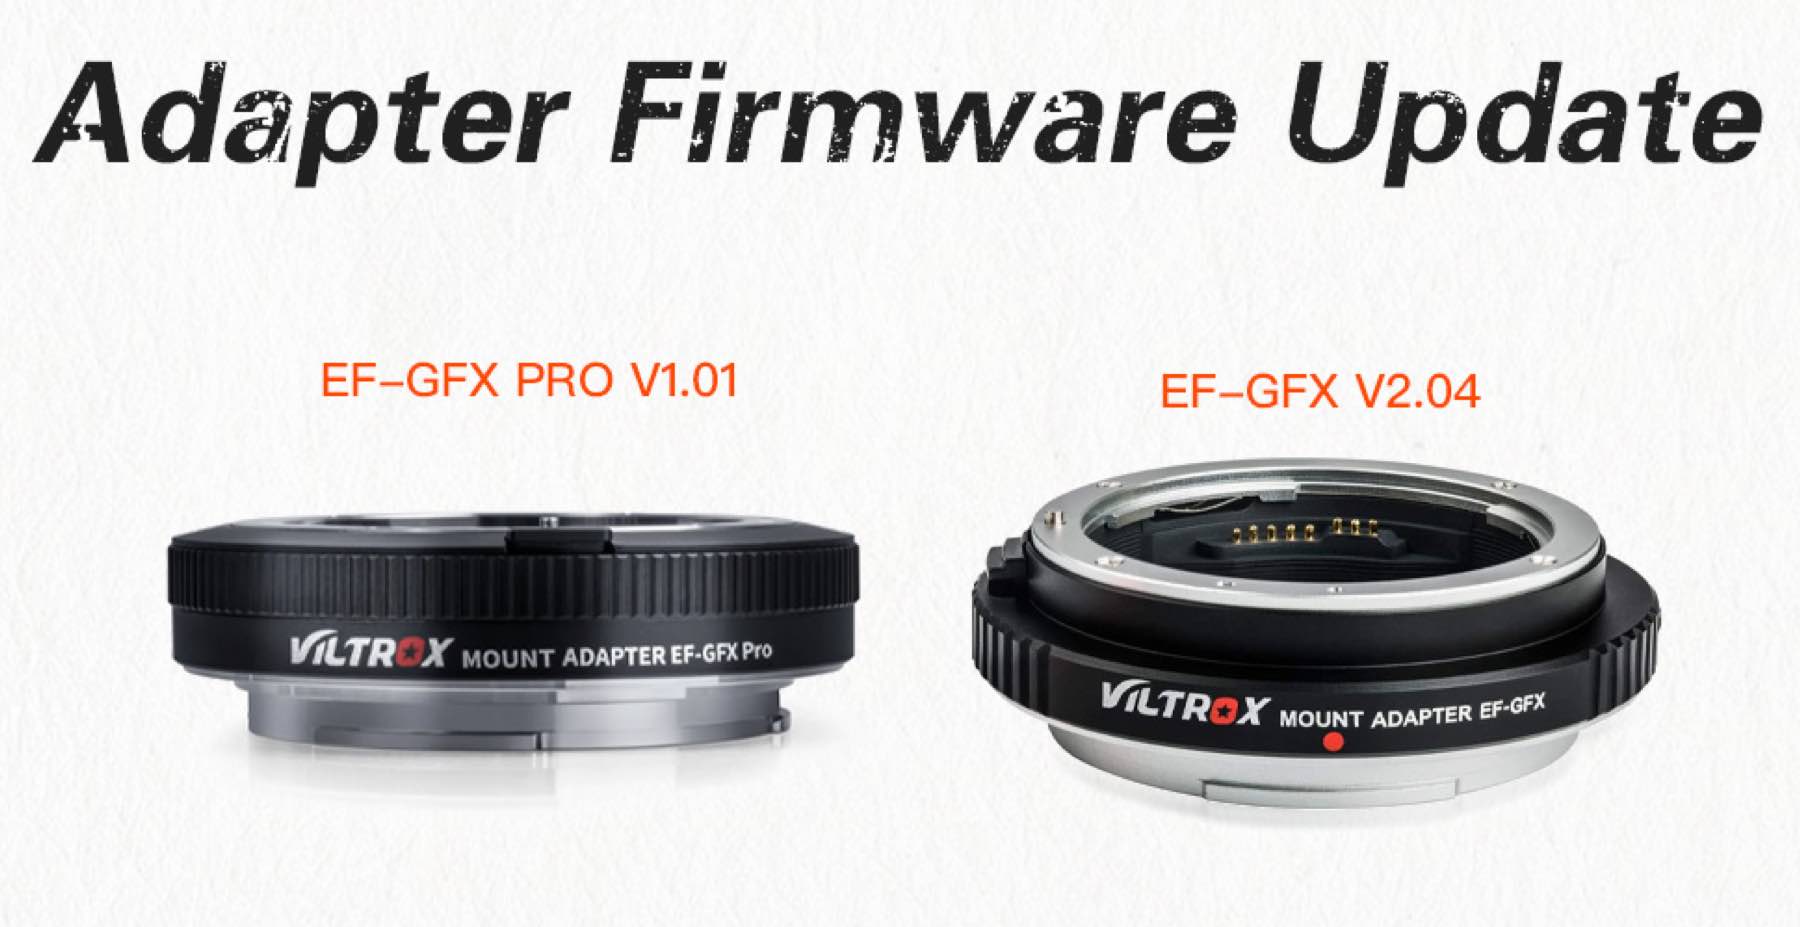 Viltrox EF-GFX PRO and EF-GFX Firmware Updates - Fuji Rumors